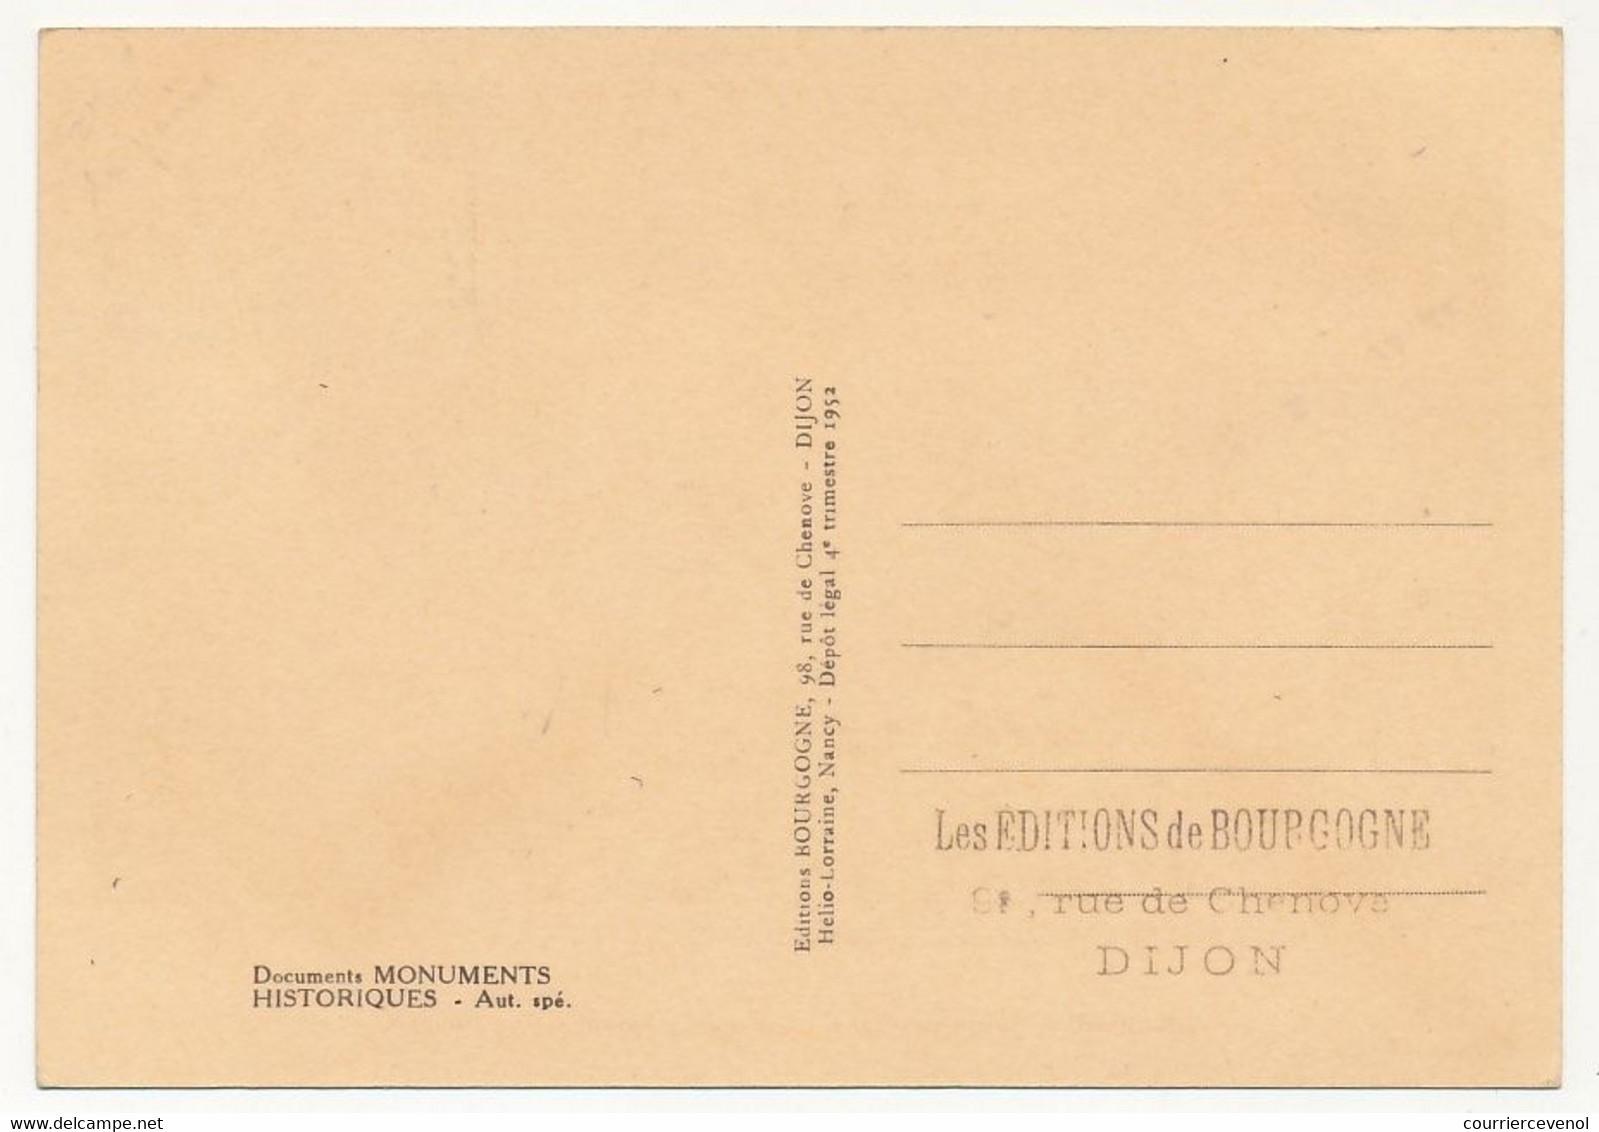 FRANCE - 2 Cartes Maximum - Croix Rouge - "Enfant Sur Un Dauphin" (2 Valeurs) Obl Hexagonale Chateau De Versailles - 1950-1959